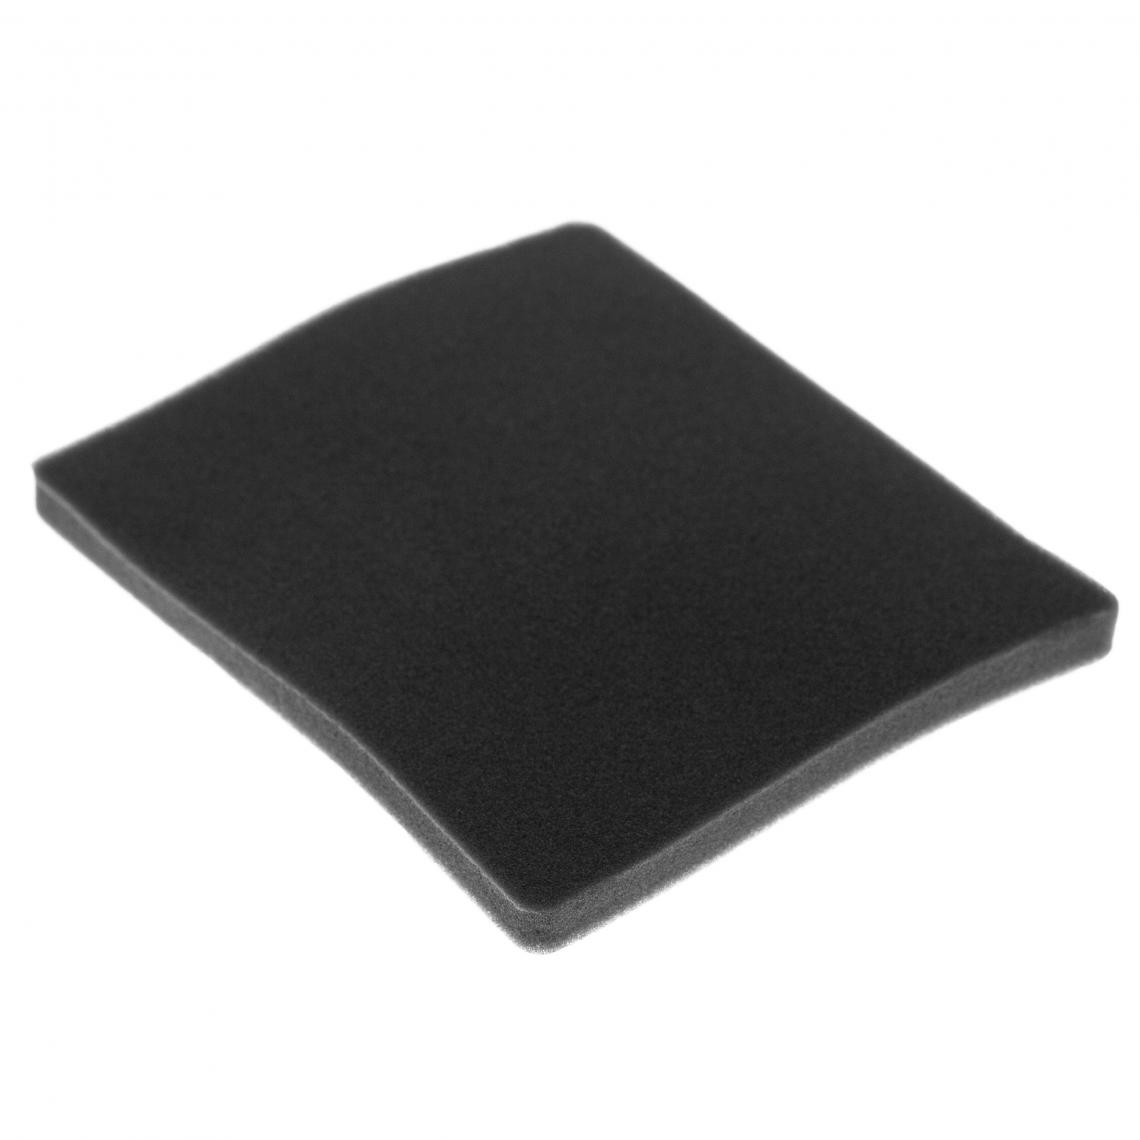 Vhbw - vhbw Filtre compatible avec Electrolux ZCX6317 (903151107) aspirateur - filtre de sortie d'air (filtre éponge), noir - Accessoire entretien des sols